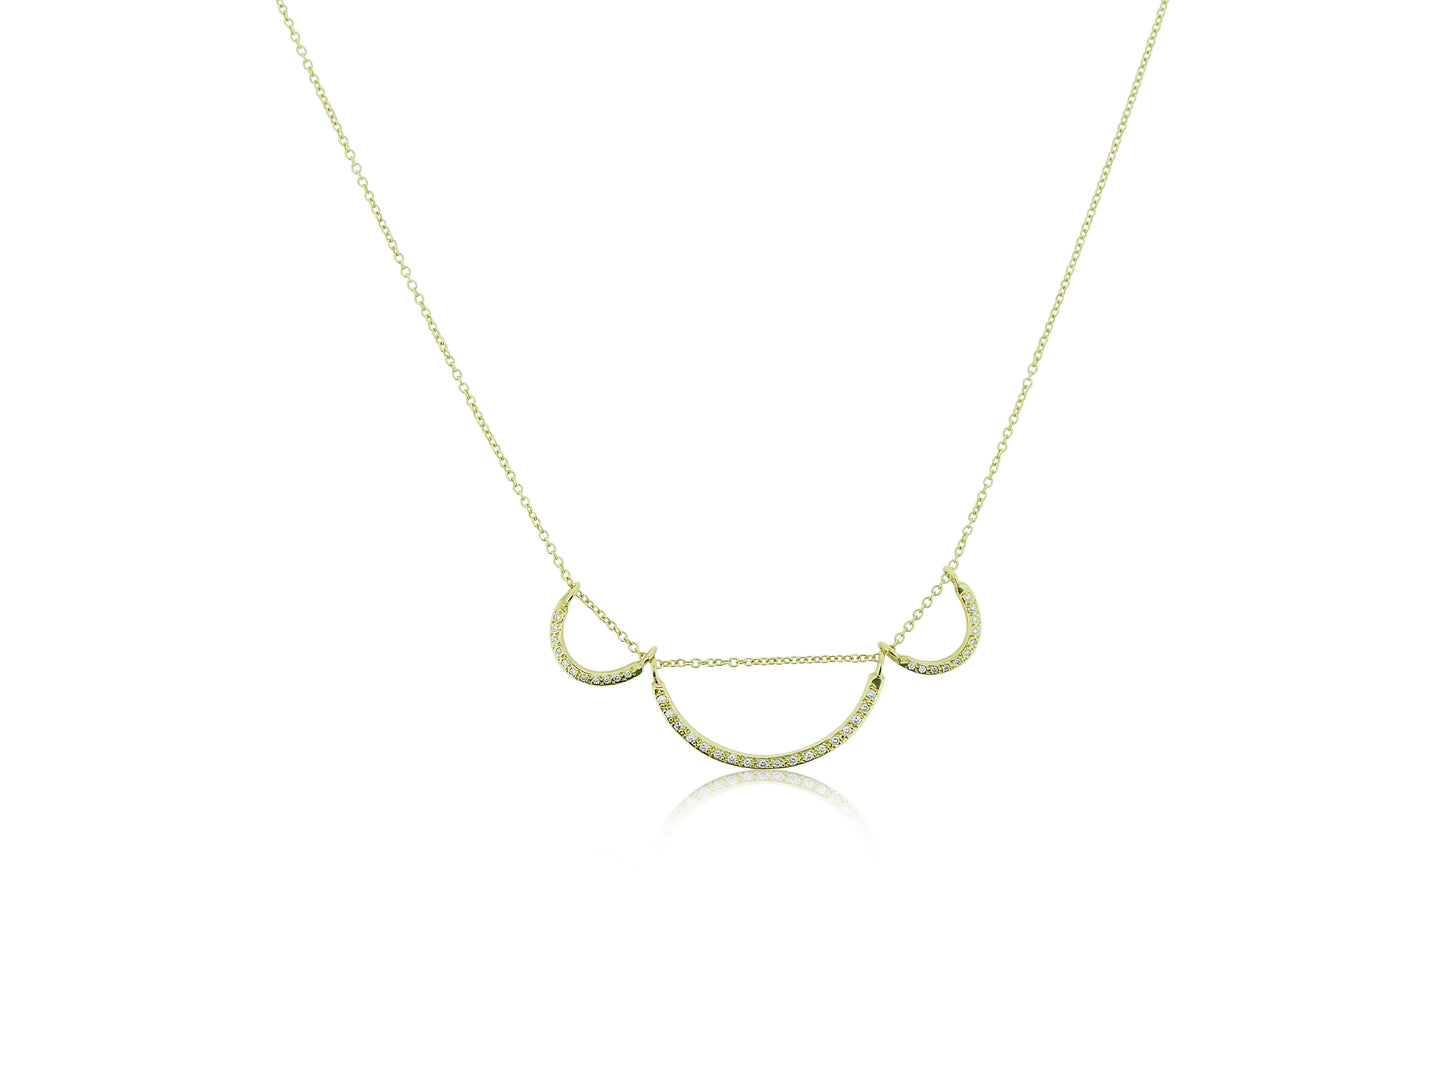 Triple Curve Necklace with Diamonds